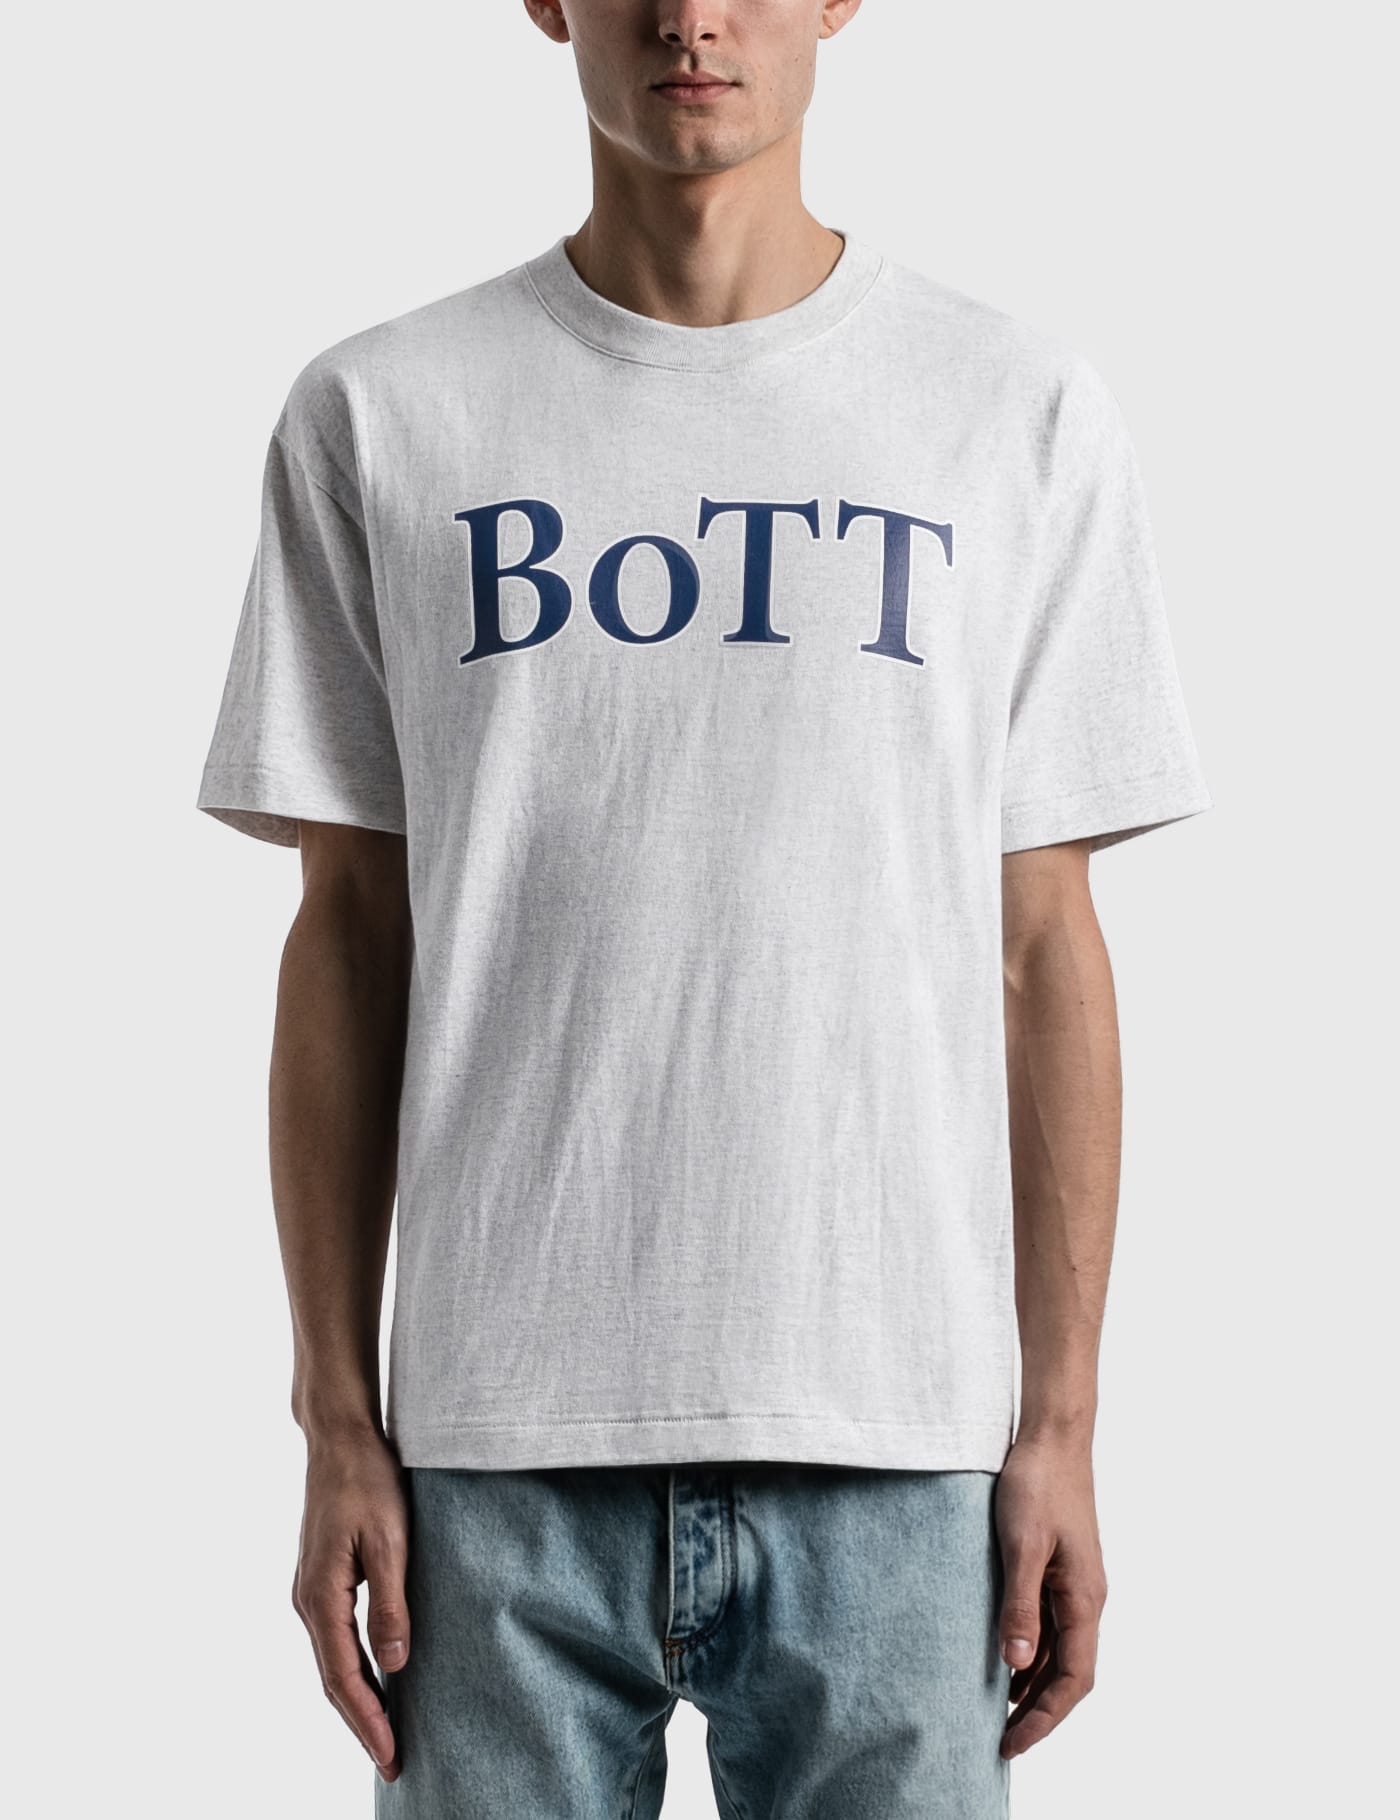 BoTT - BoTT OG Logo T-shirt | HBX - ハイプビースト(Hypebeast)が